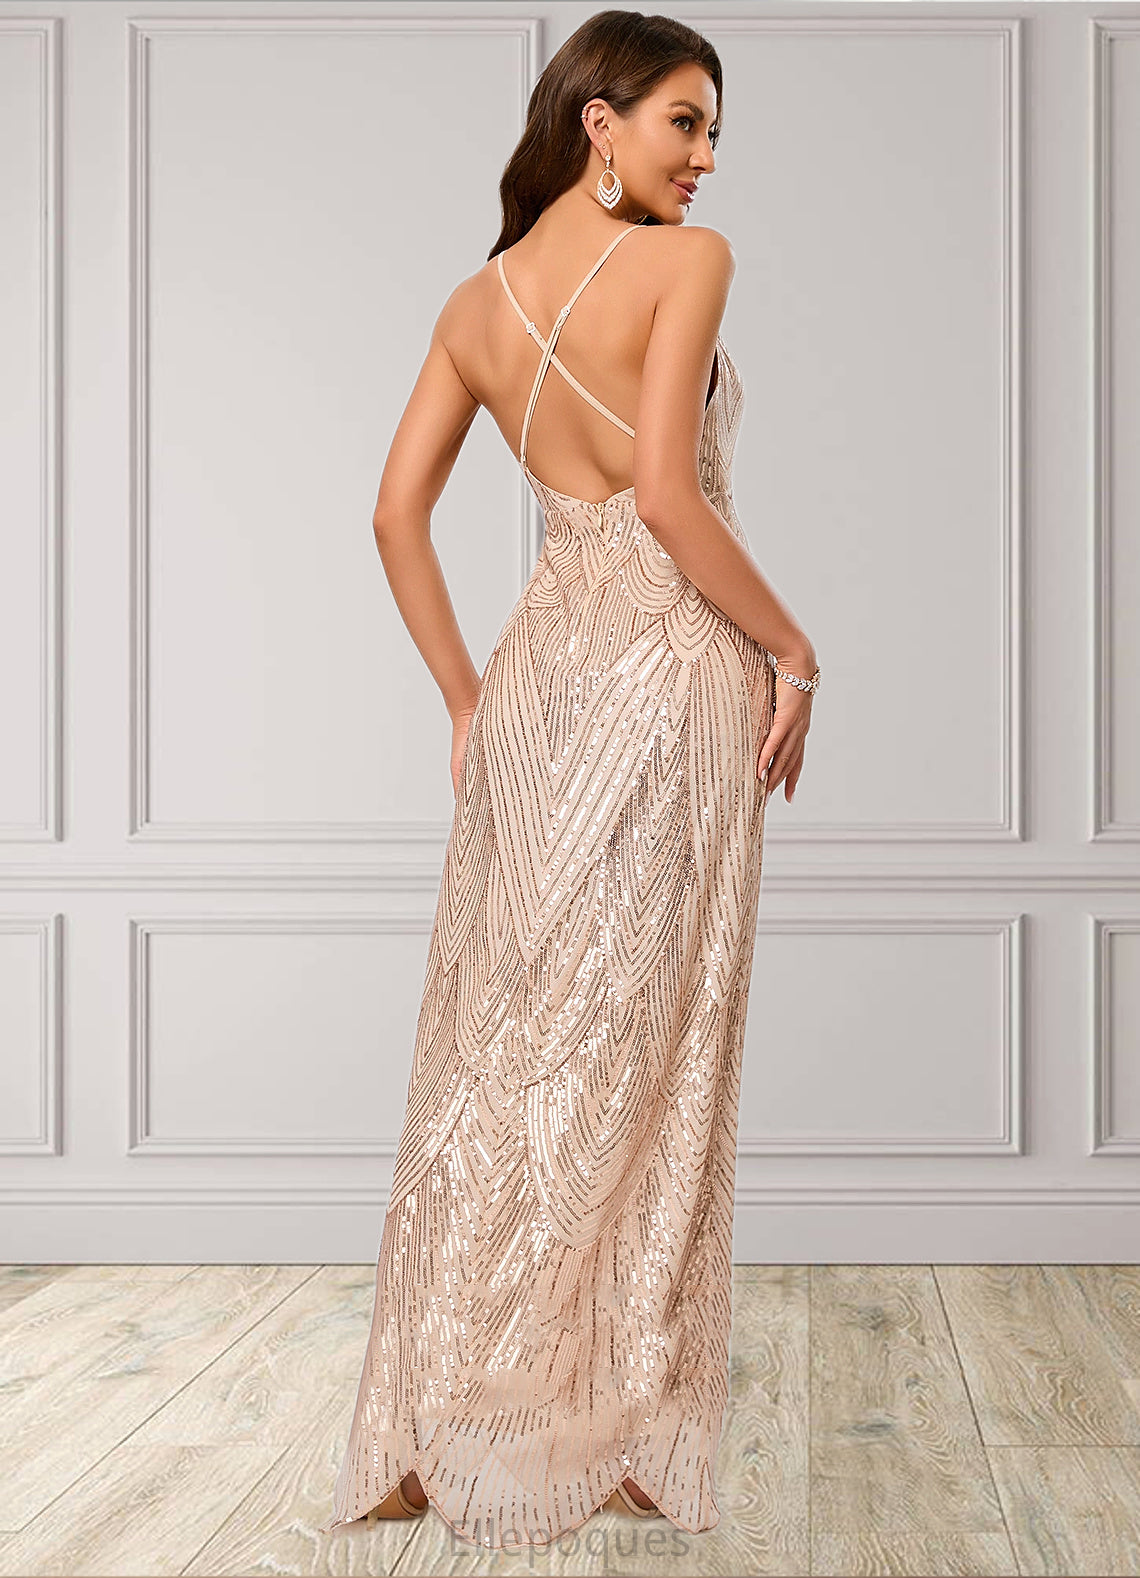 Lina V-Neck Sheath/Column Sequin Dresses HOP0022440